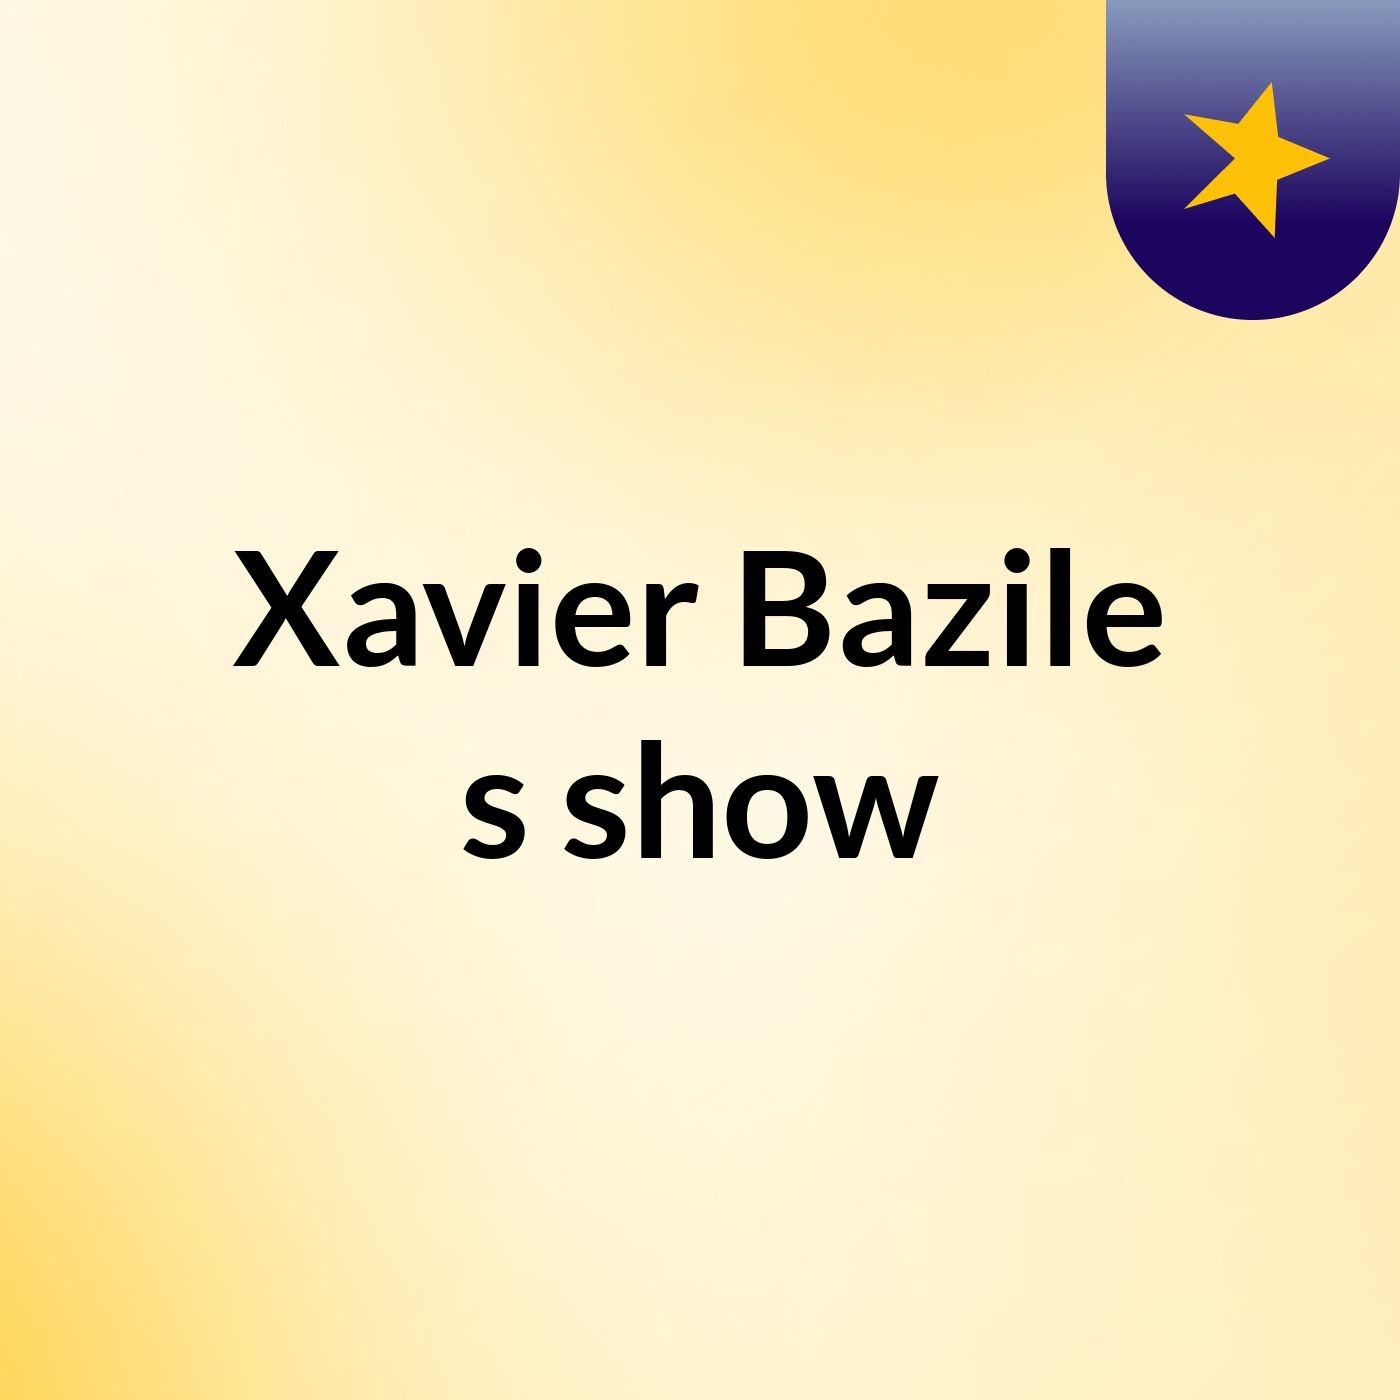 Xavier Bazile's show